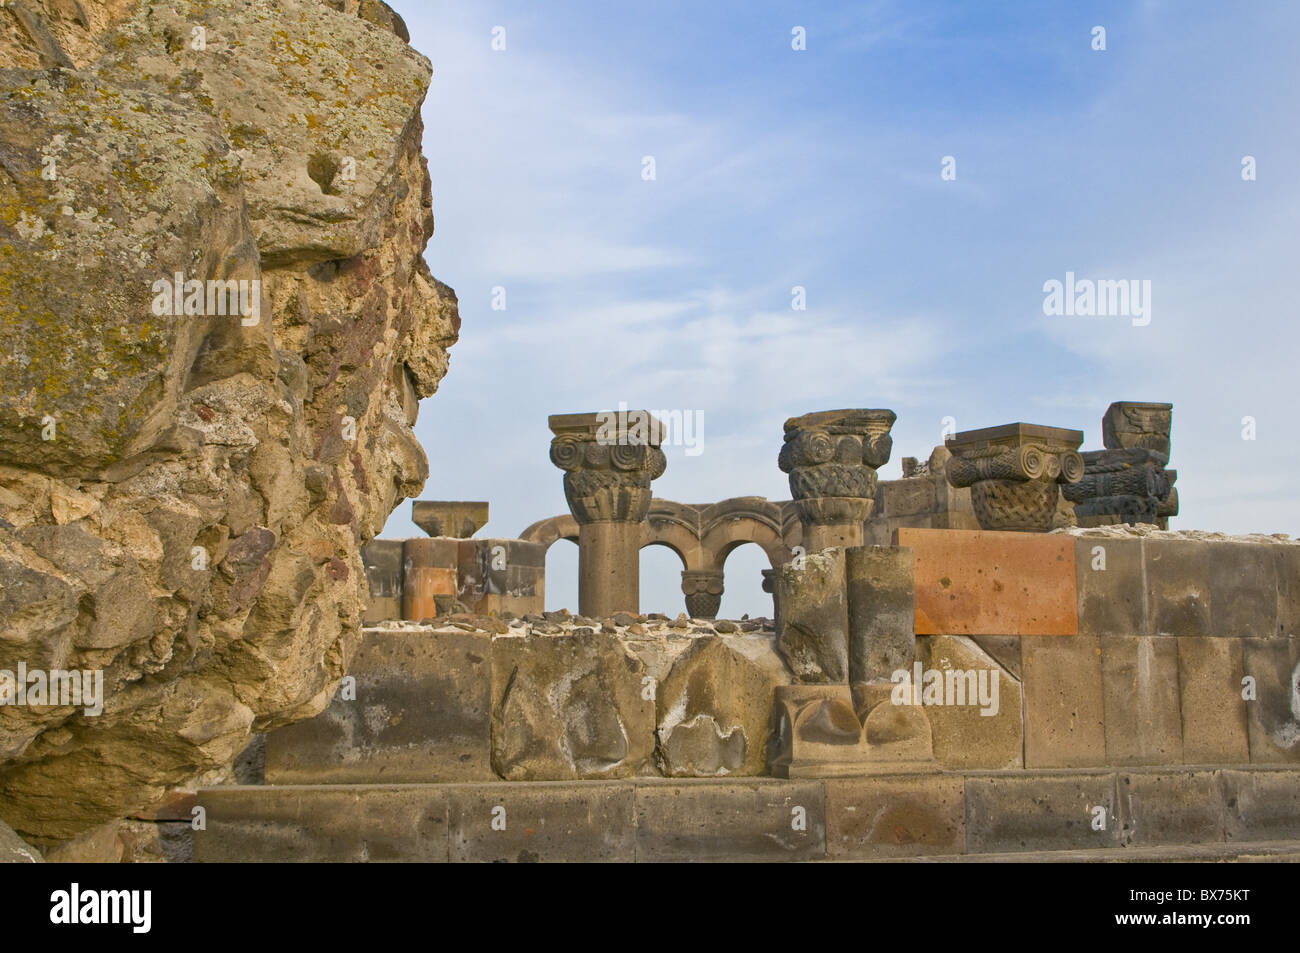 Cattedrale di Zvarnots, Sito Patrimonio Mondiale dell'UNESCO, Zvartnots, Armenia, nel Caucaso e in Asia Centrale, Asia Foto Stock